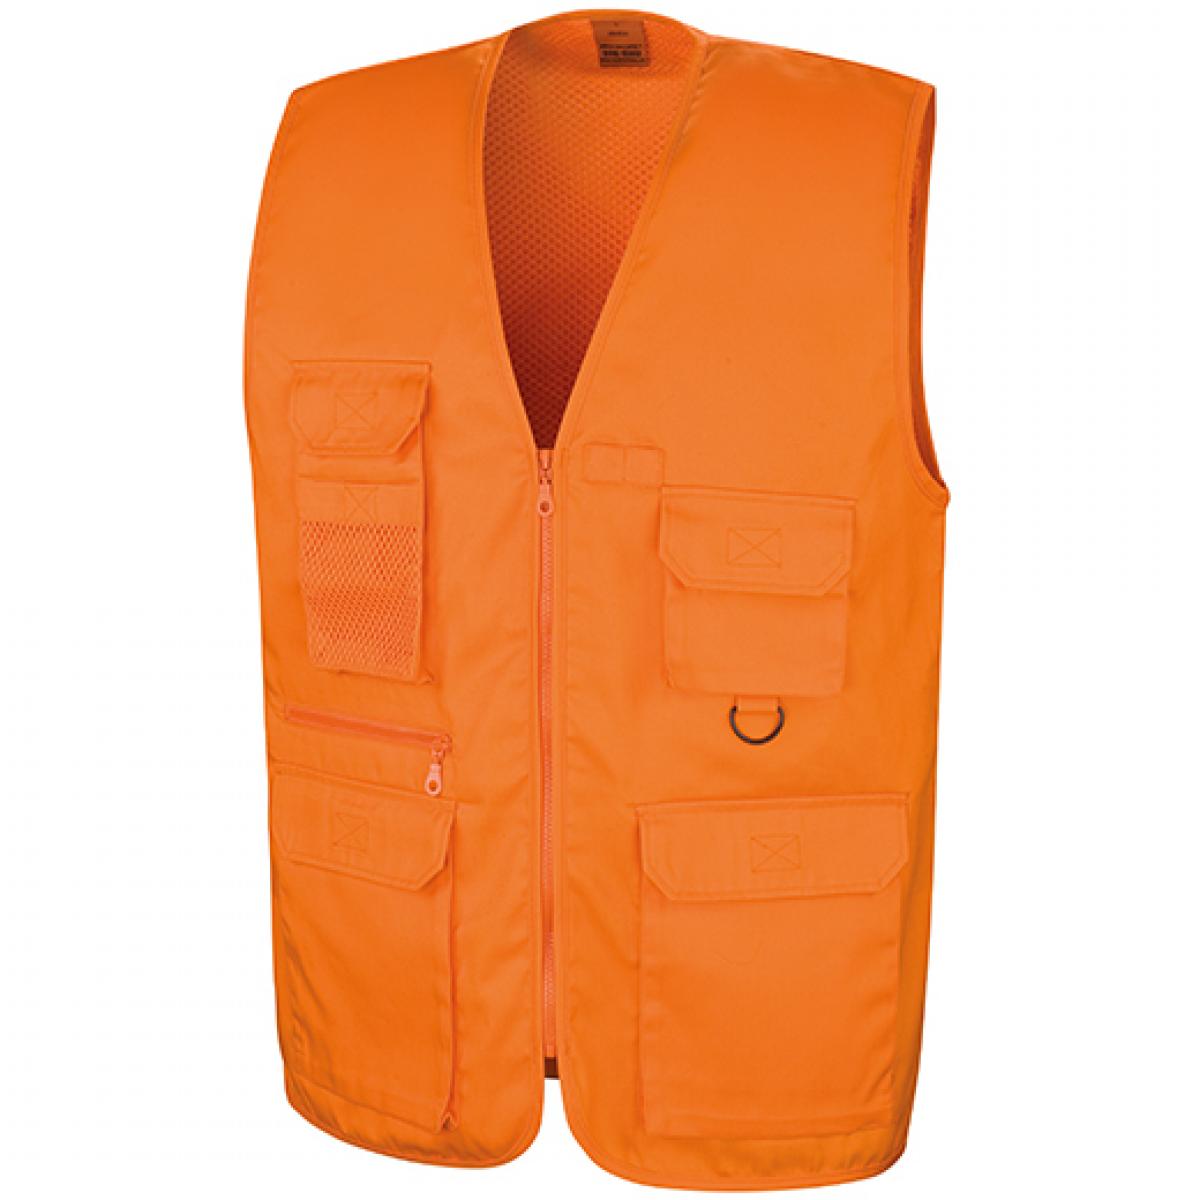 Hersteller: Result WORK-GUARD Herstellernummer: R45X Artikelbezeichnung: Herren Arbeitsweste Safari Vest Farbe: Orange